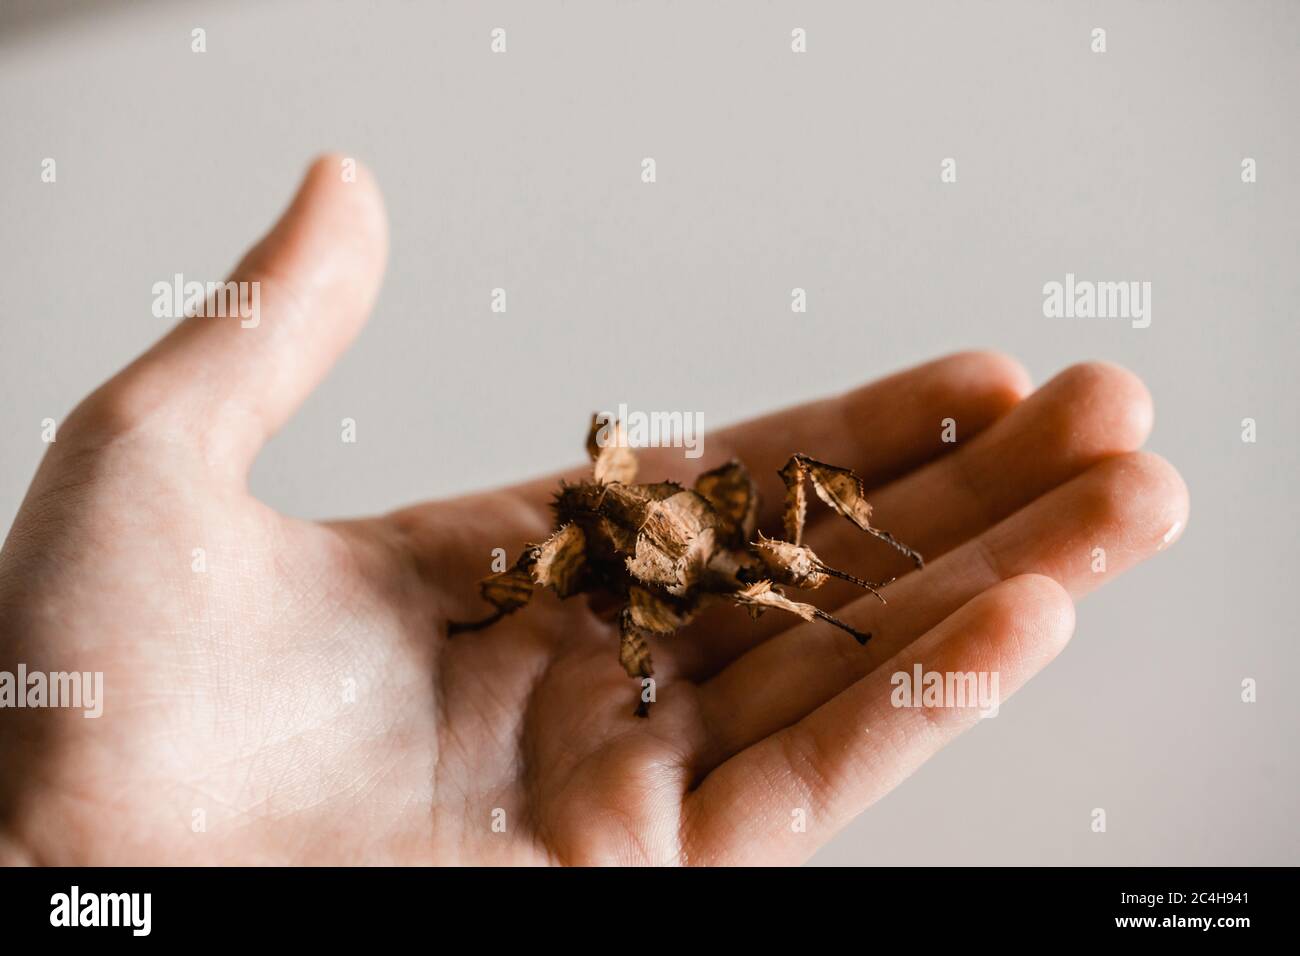 Weibliches Stachelblatt-Insekt auf der Hand des Kindes Stockfoto